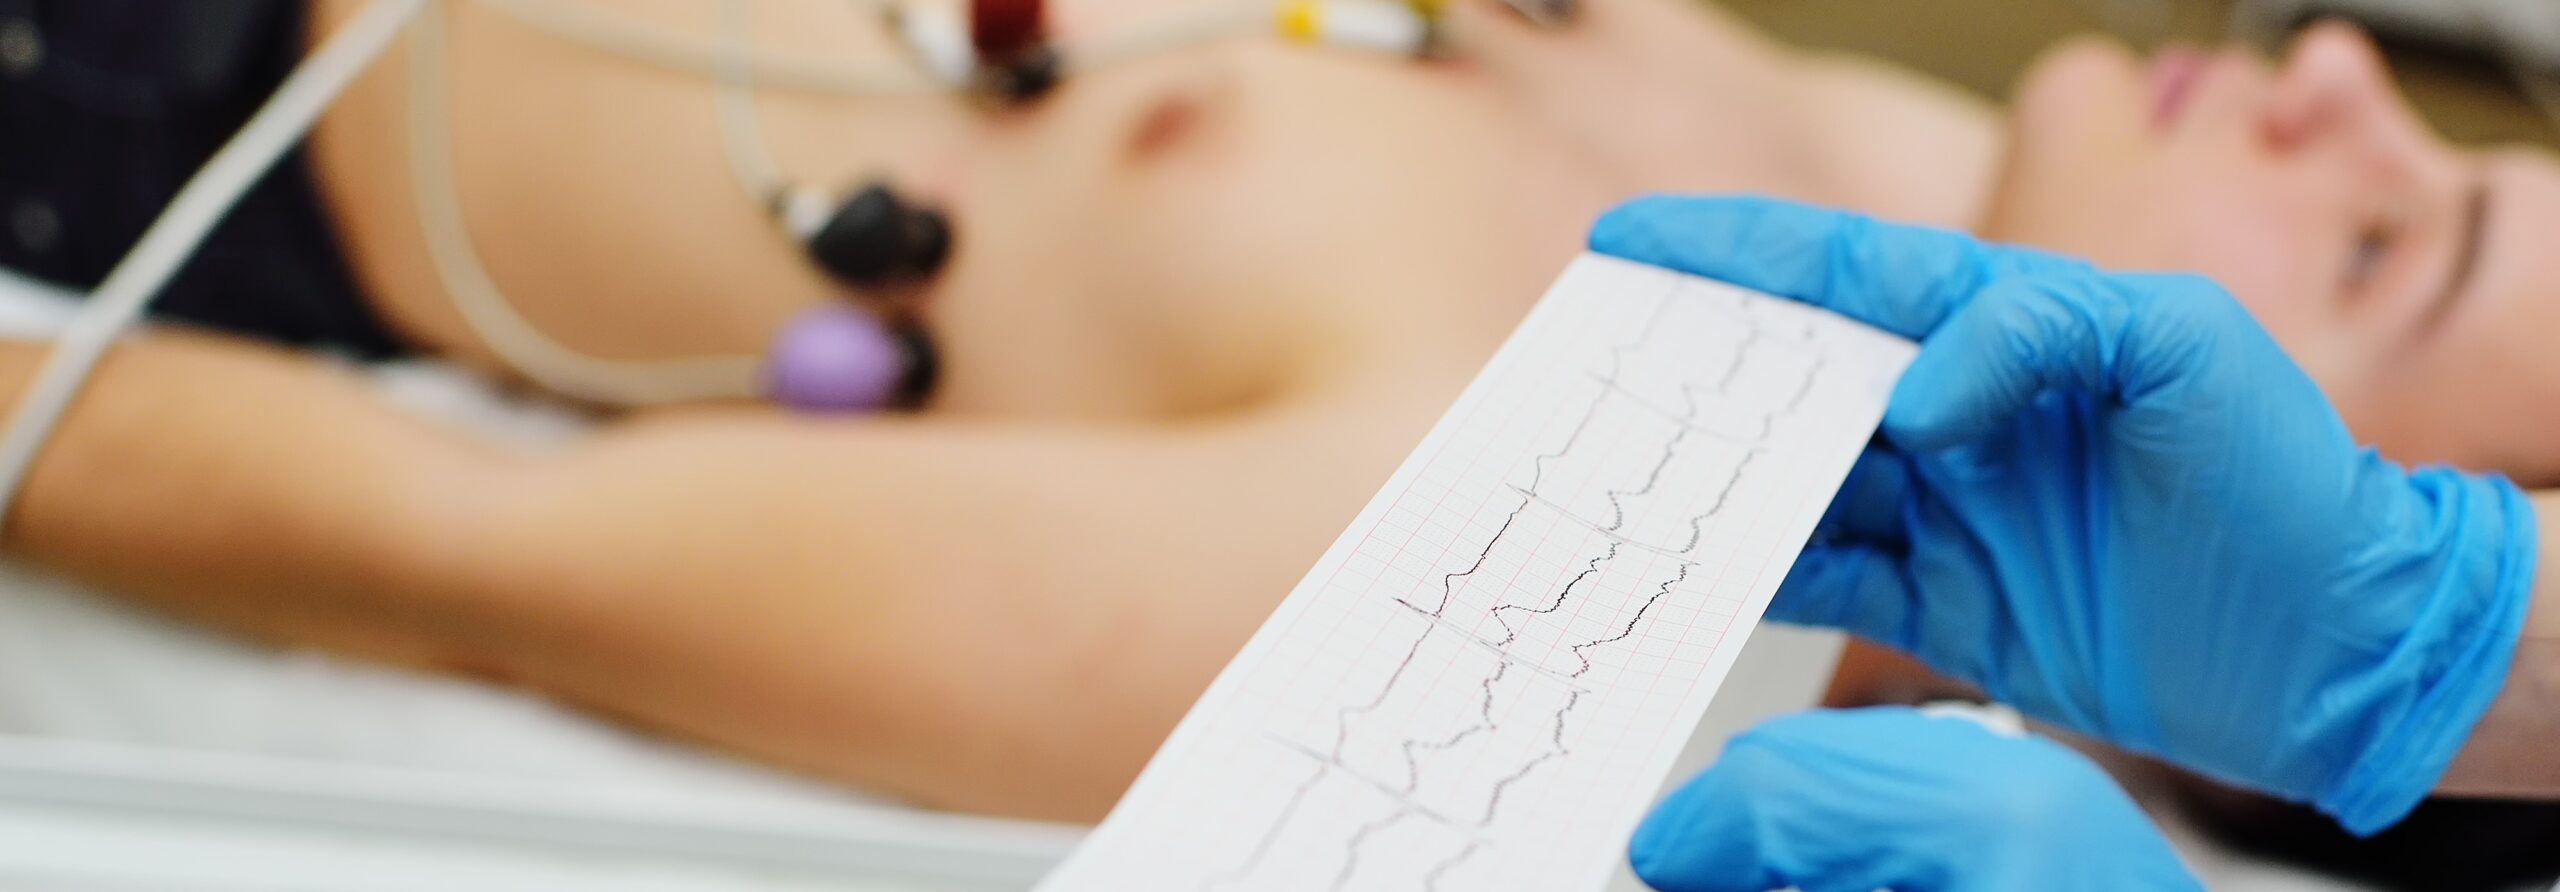 Electrocardiograma o ECG